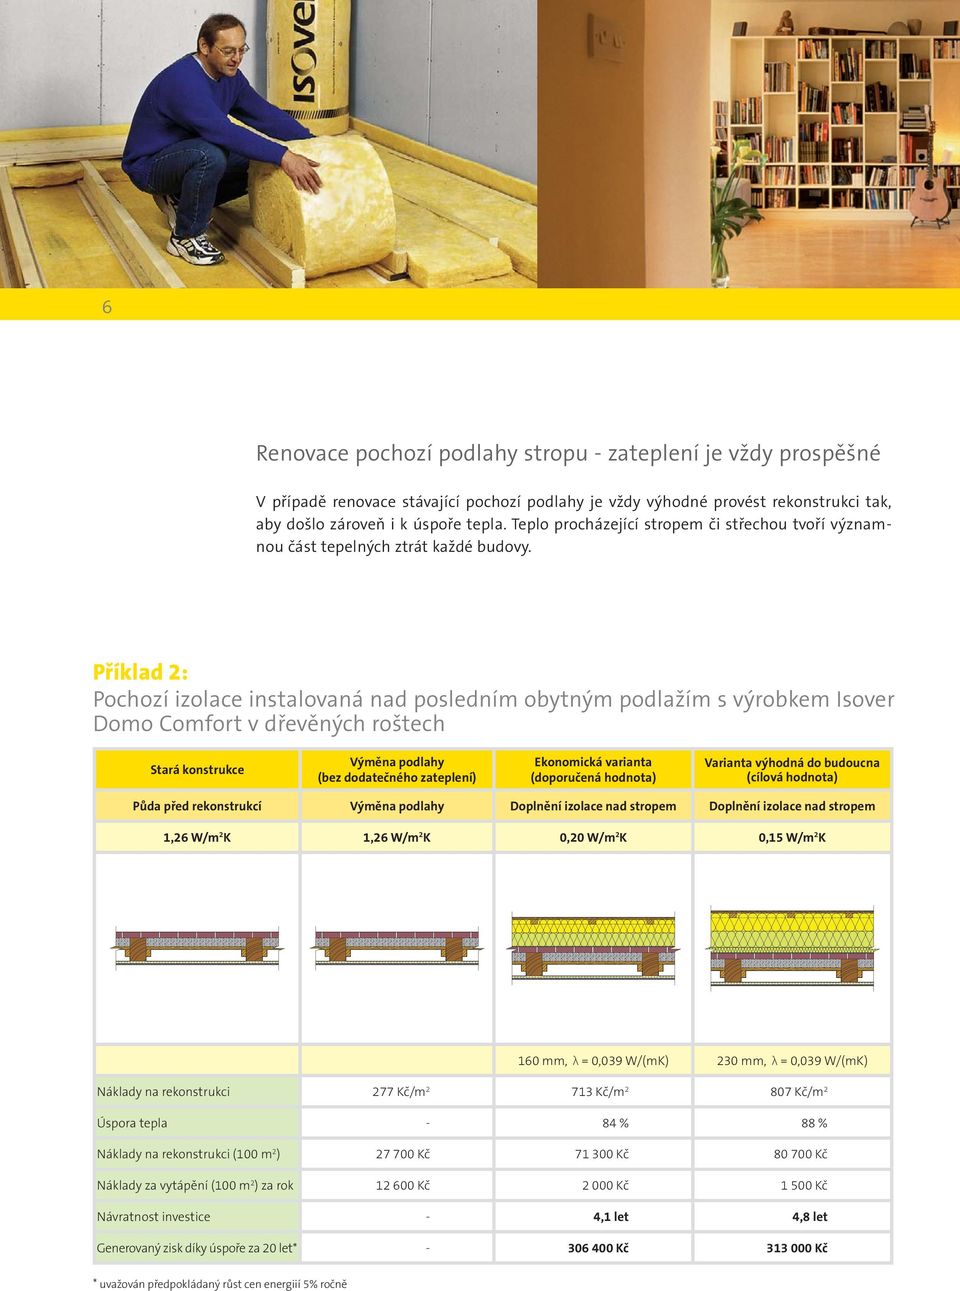 Příklad 2: Pochozí izolace instalovaná nad posledním obytným podlažím s výrobkem Isover Domo Comfort v dřevěných roštech Výměna podlahy (bez dodatečného zateplení) (cílová hodnota) Půda před